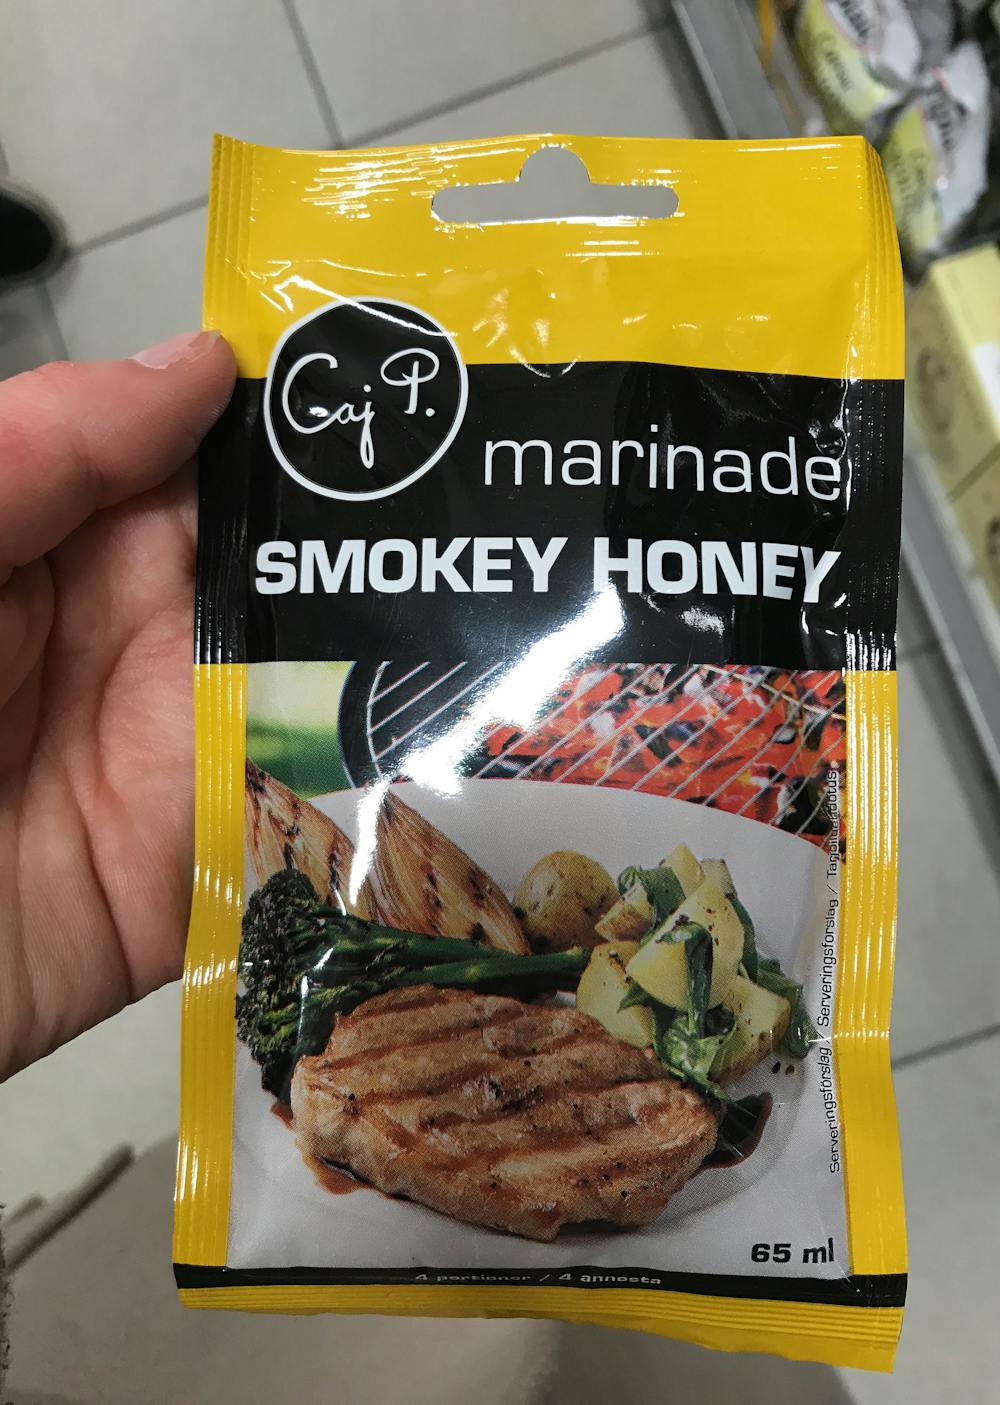 Smokey honey marinade, Gai. P